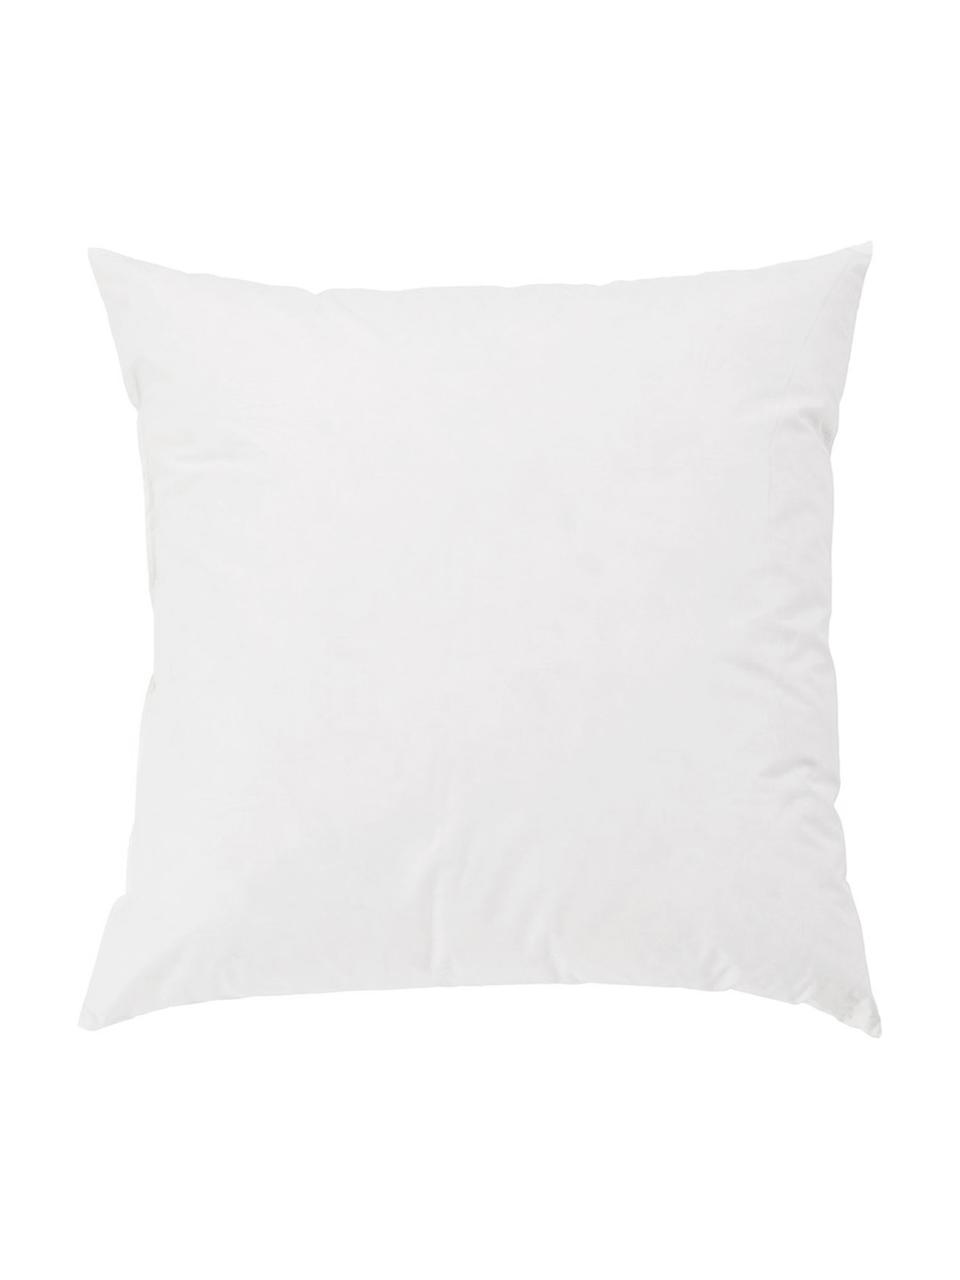 Wkład do poduszki dekoracyjnej z pierza Komfort, 60x60, Biały, S 60 x D 60 cm